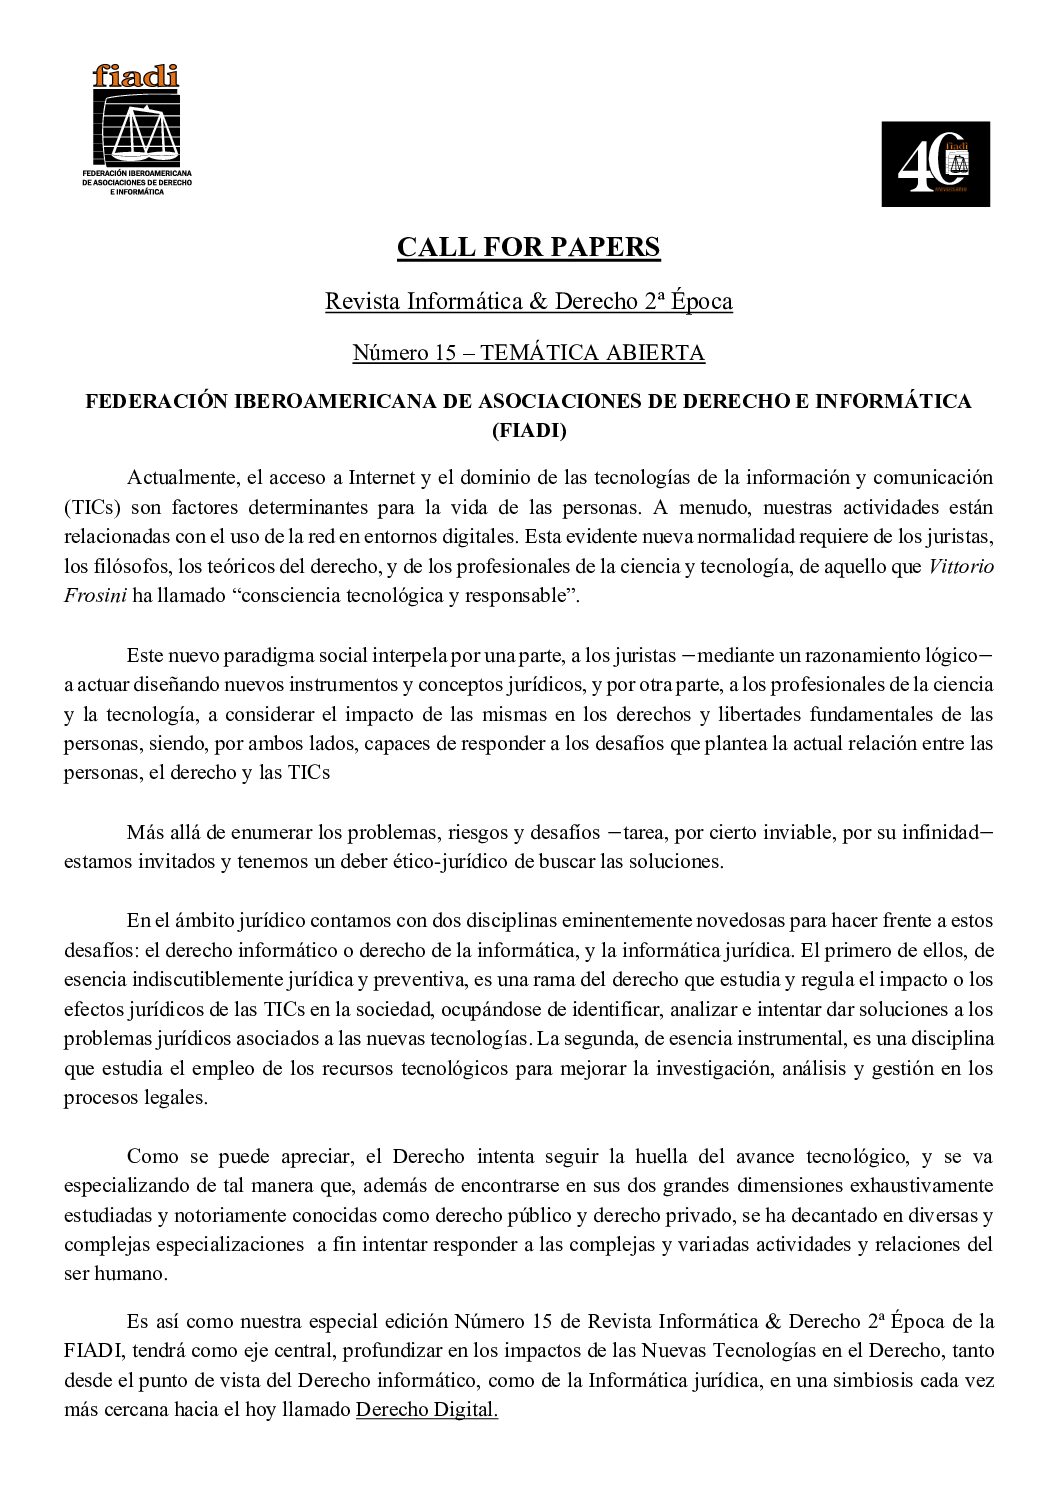 CALL FOR PAPERS Revista Informática & Derecho 2ª Época Número 15 – TEMÁTICA ABIERTA – FIADI